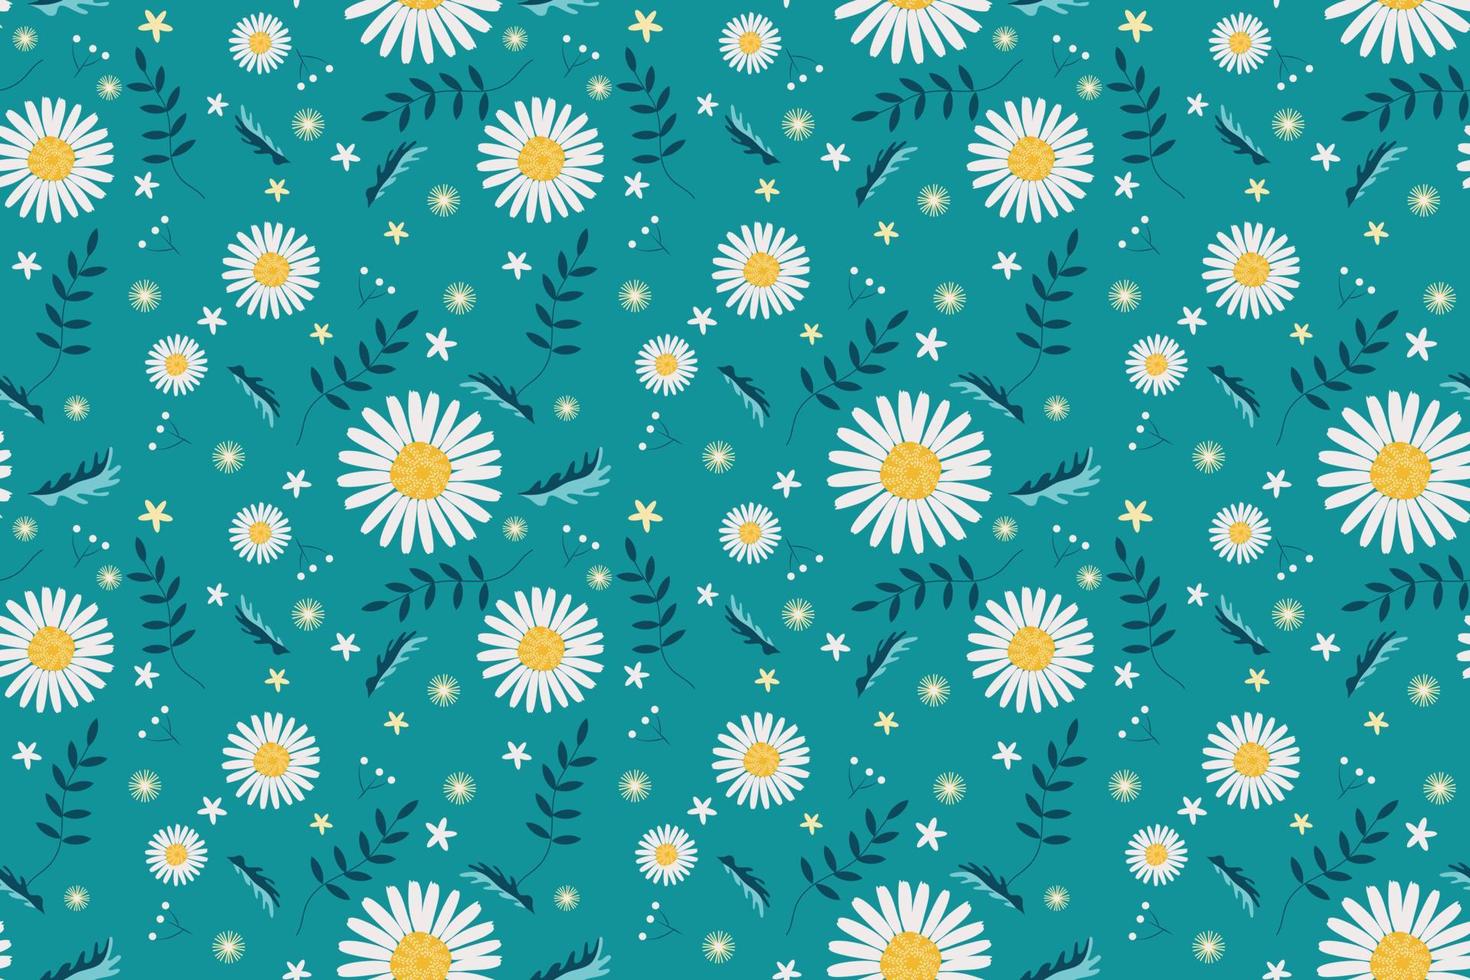 Gänseblümchen Blume nahtlos Muster Weiß Blume auf Blau Grün Hintergrund mit Grün Blätter Wiese Feld Design zum Mode Textil- Stoff Innere Verpackung Papier usw. vektor